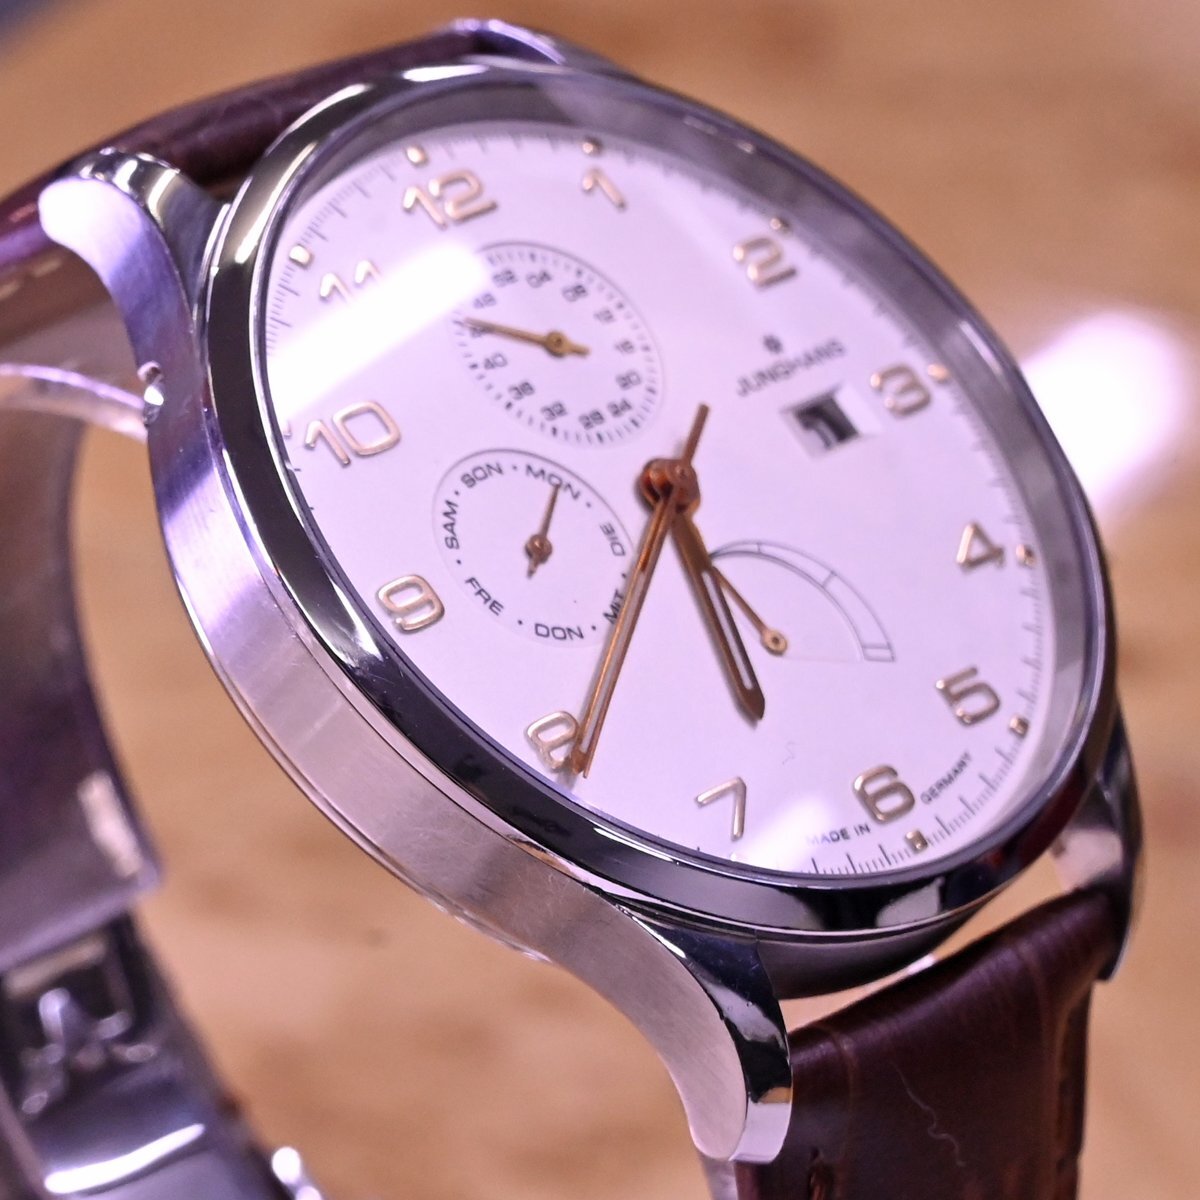  подлинный товар очень красивый товар Junghans высшее редкий atashe Agenda автоматический мужской часы мужской самозаводящиеся часы наручные часы письменная гарантия брошюра есть JUNGHANS